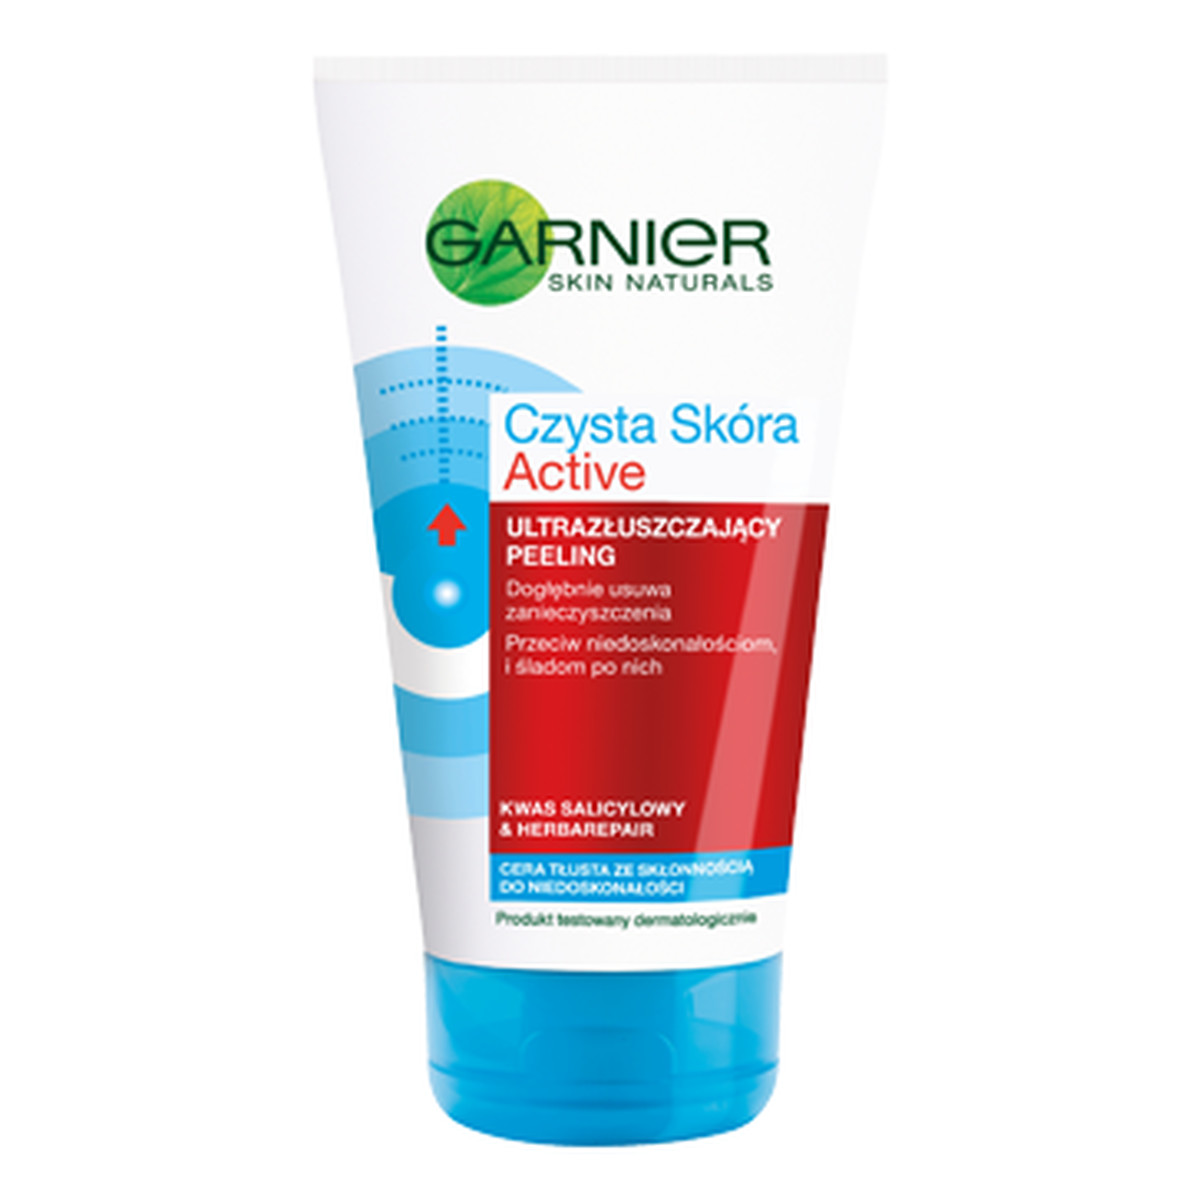 Garnier Czysta Skóra Active Skin Naturals Peeling Do Twarzy w Tubie 150ml